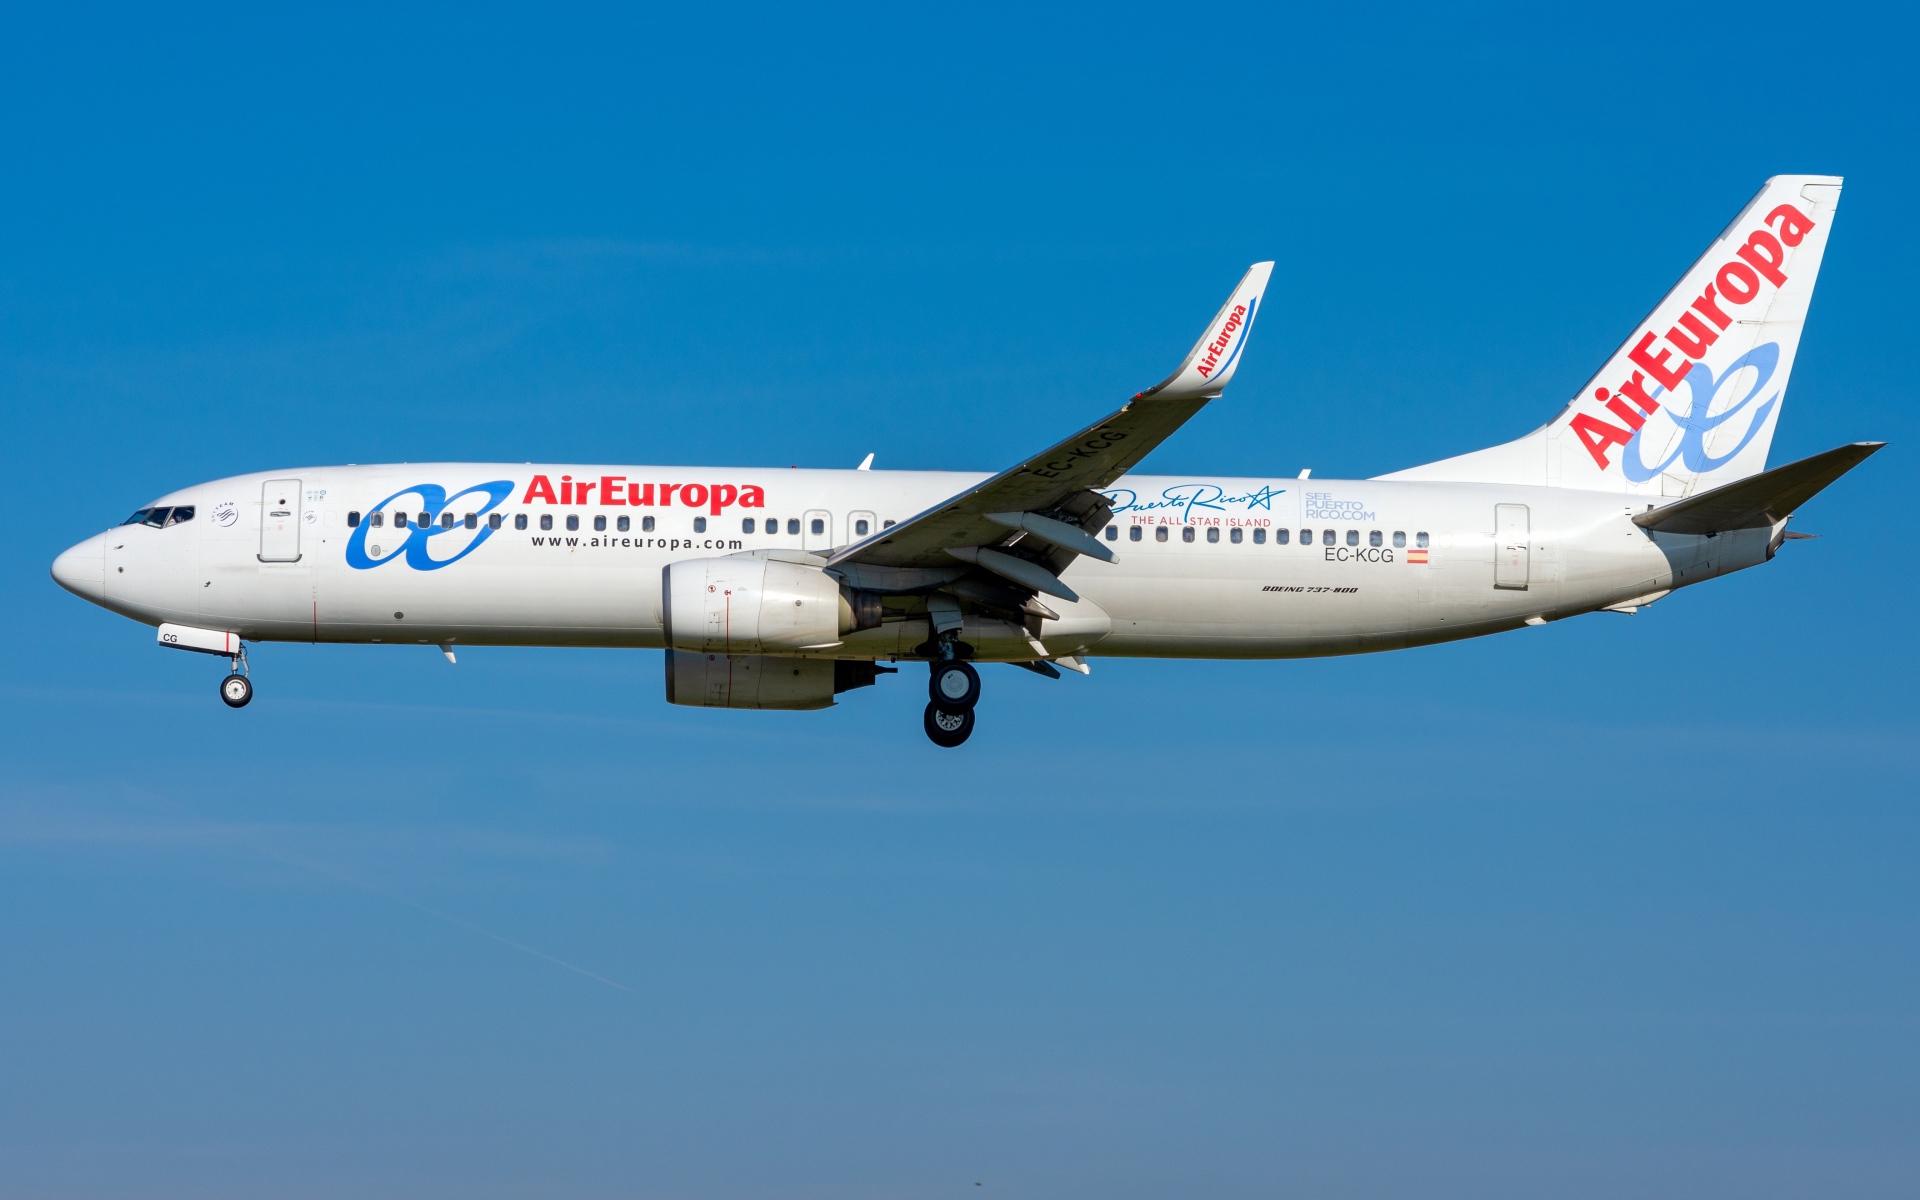 Большой пассажирский Boeing 737-800W авиакомпании Air Europa в голубом небе